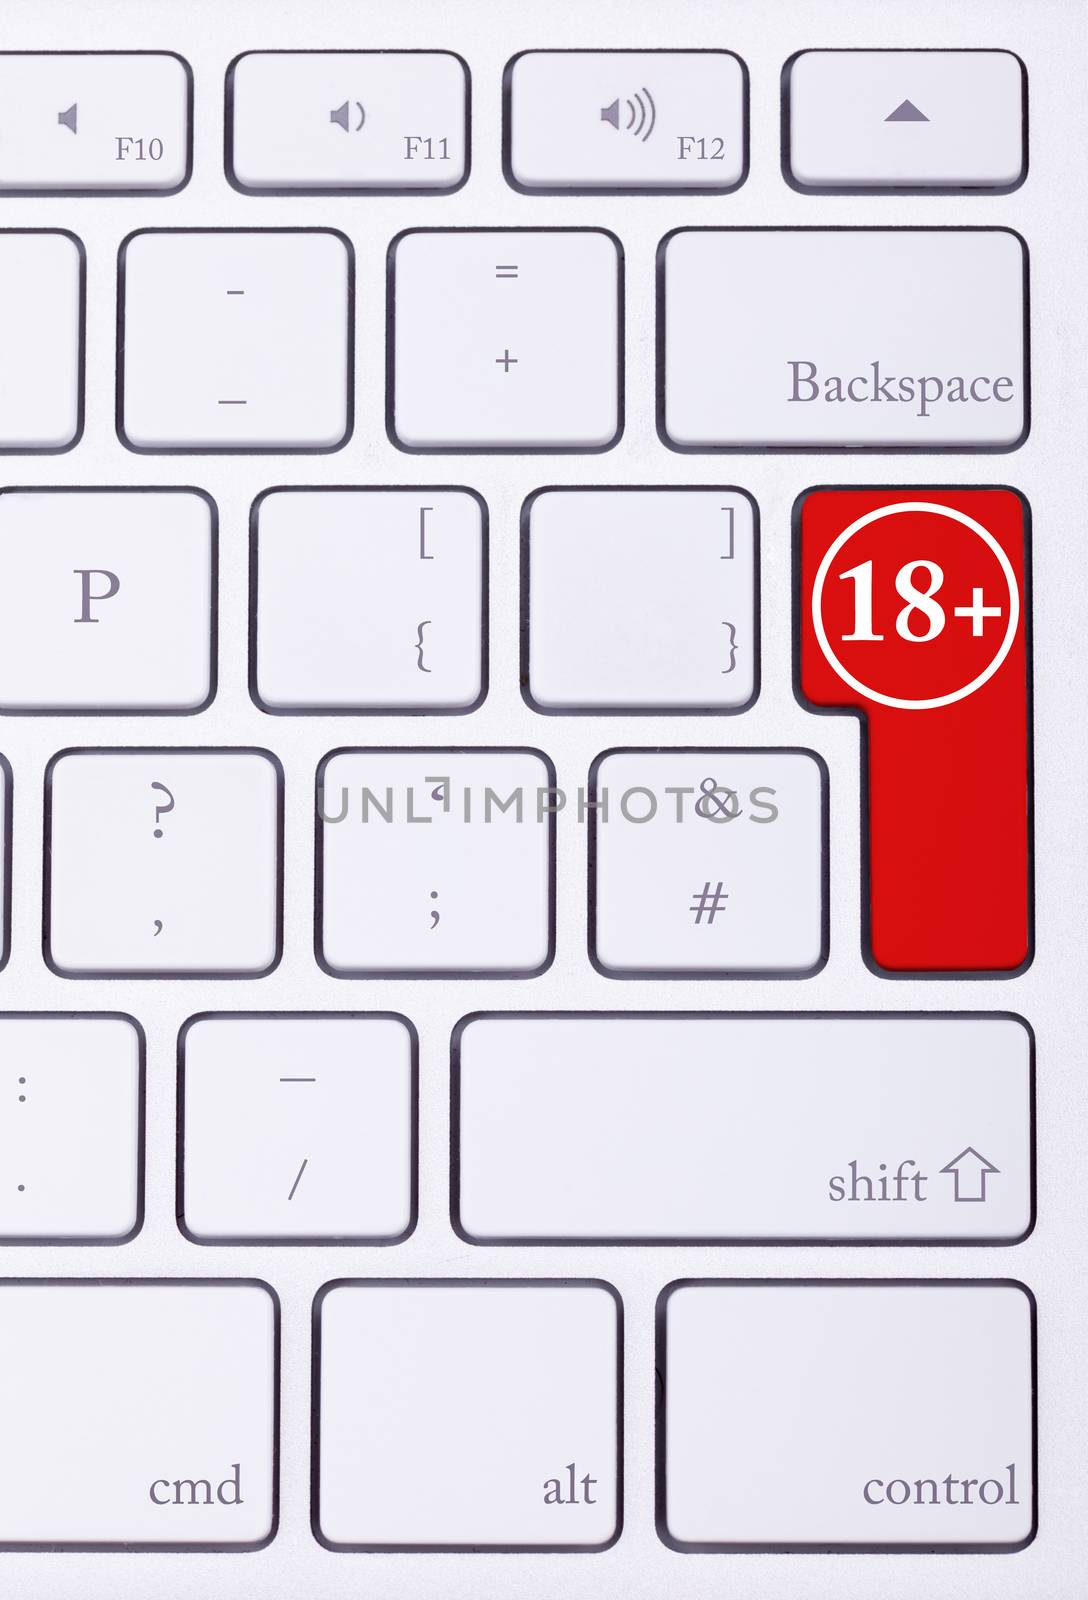 18+ written in red on key in keyboard by DCStudio